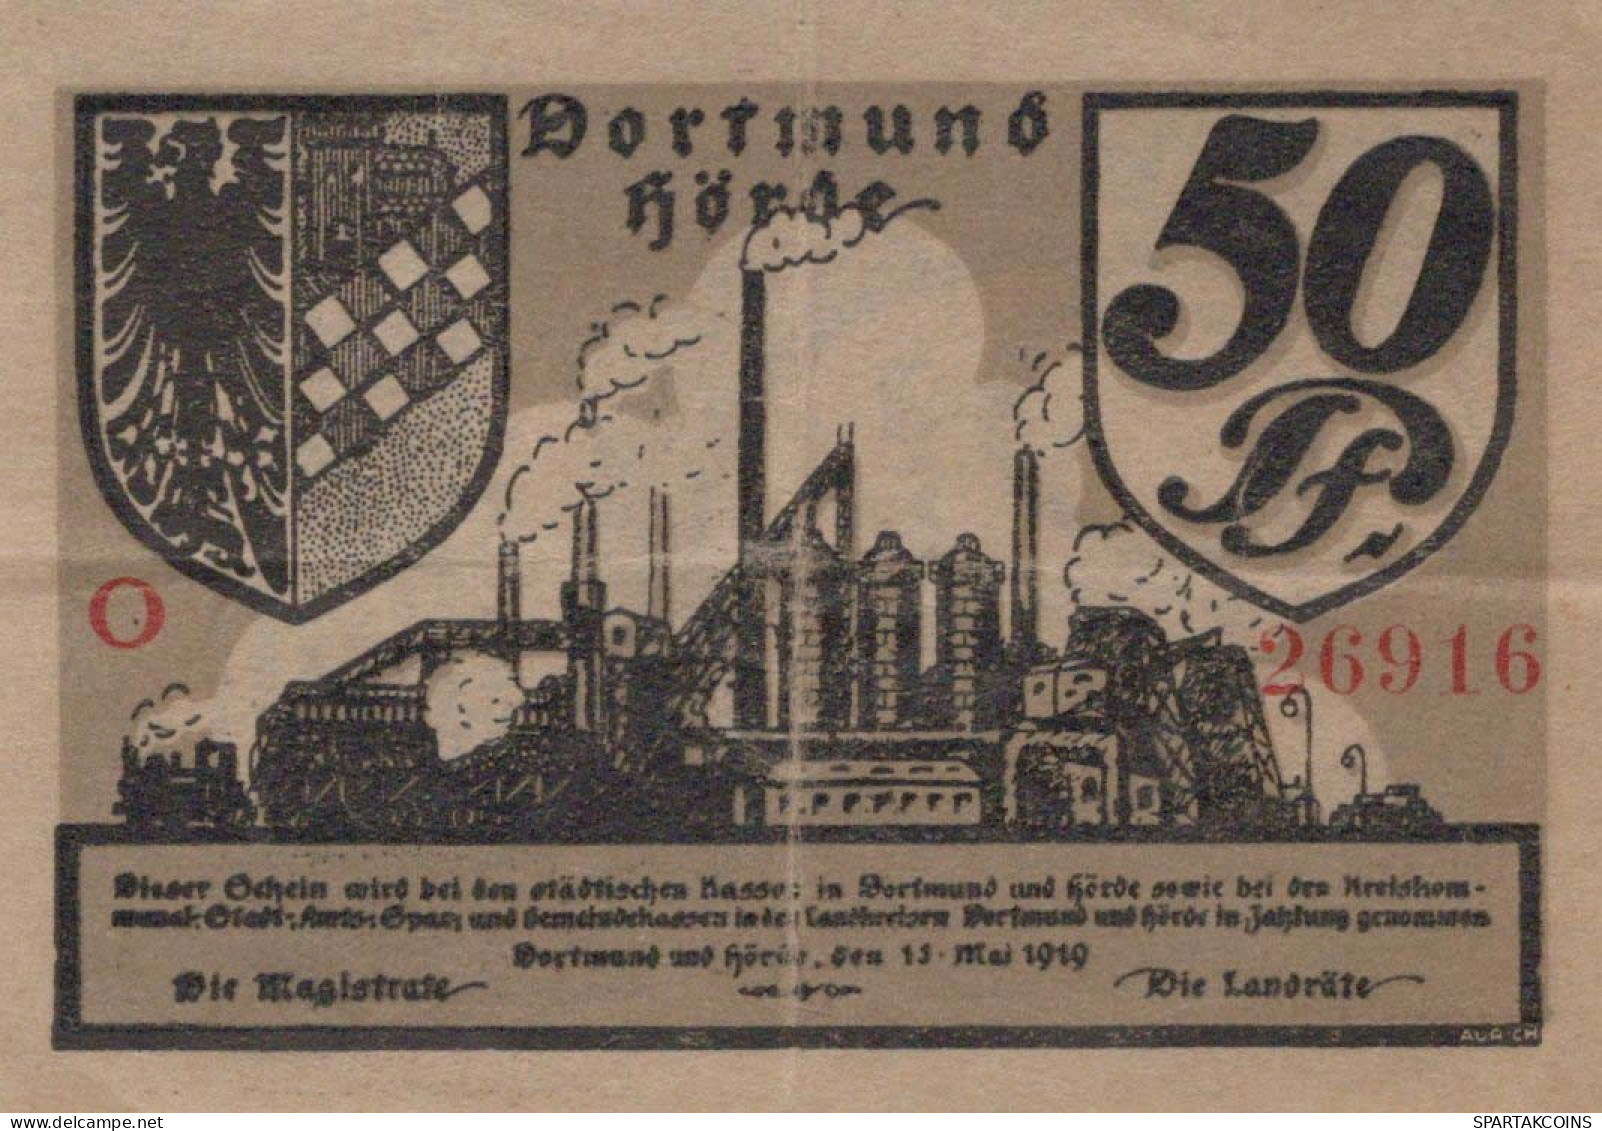 50 PFENNIG 1919 Stadt DORTMUND AND HoRDE Westphalia UNC DEUTSCHLAND #PH586 - [11] Local Banknote Issues